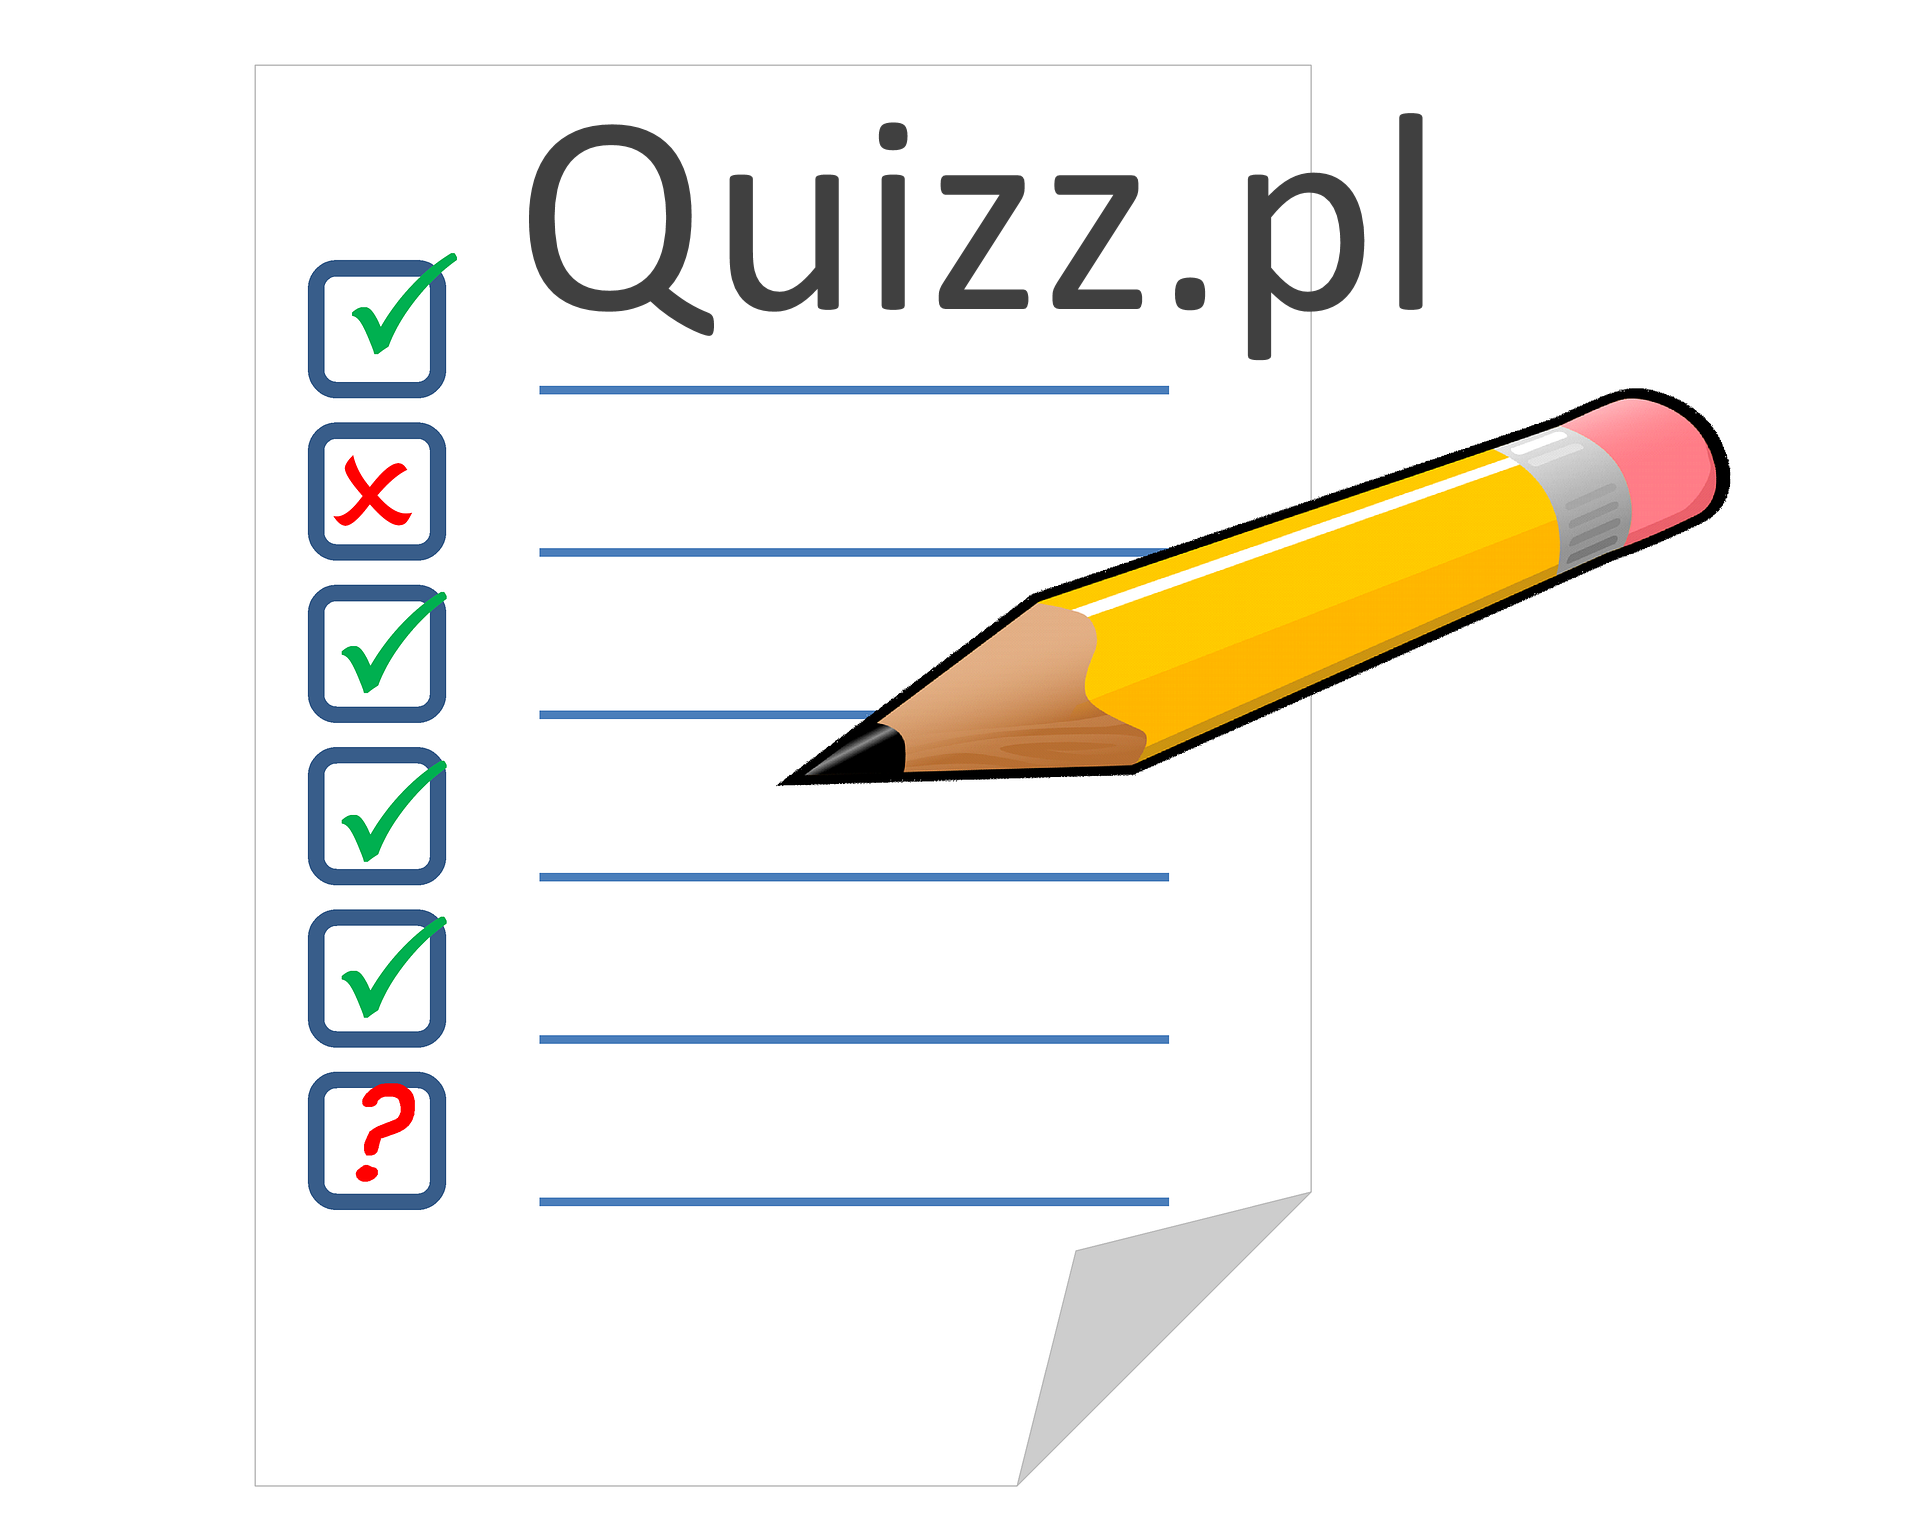 Mlp - bezpłatne quizy, ankiety, testy wiedzy - Quizz.pl